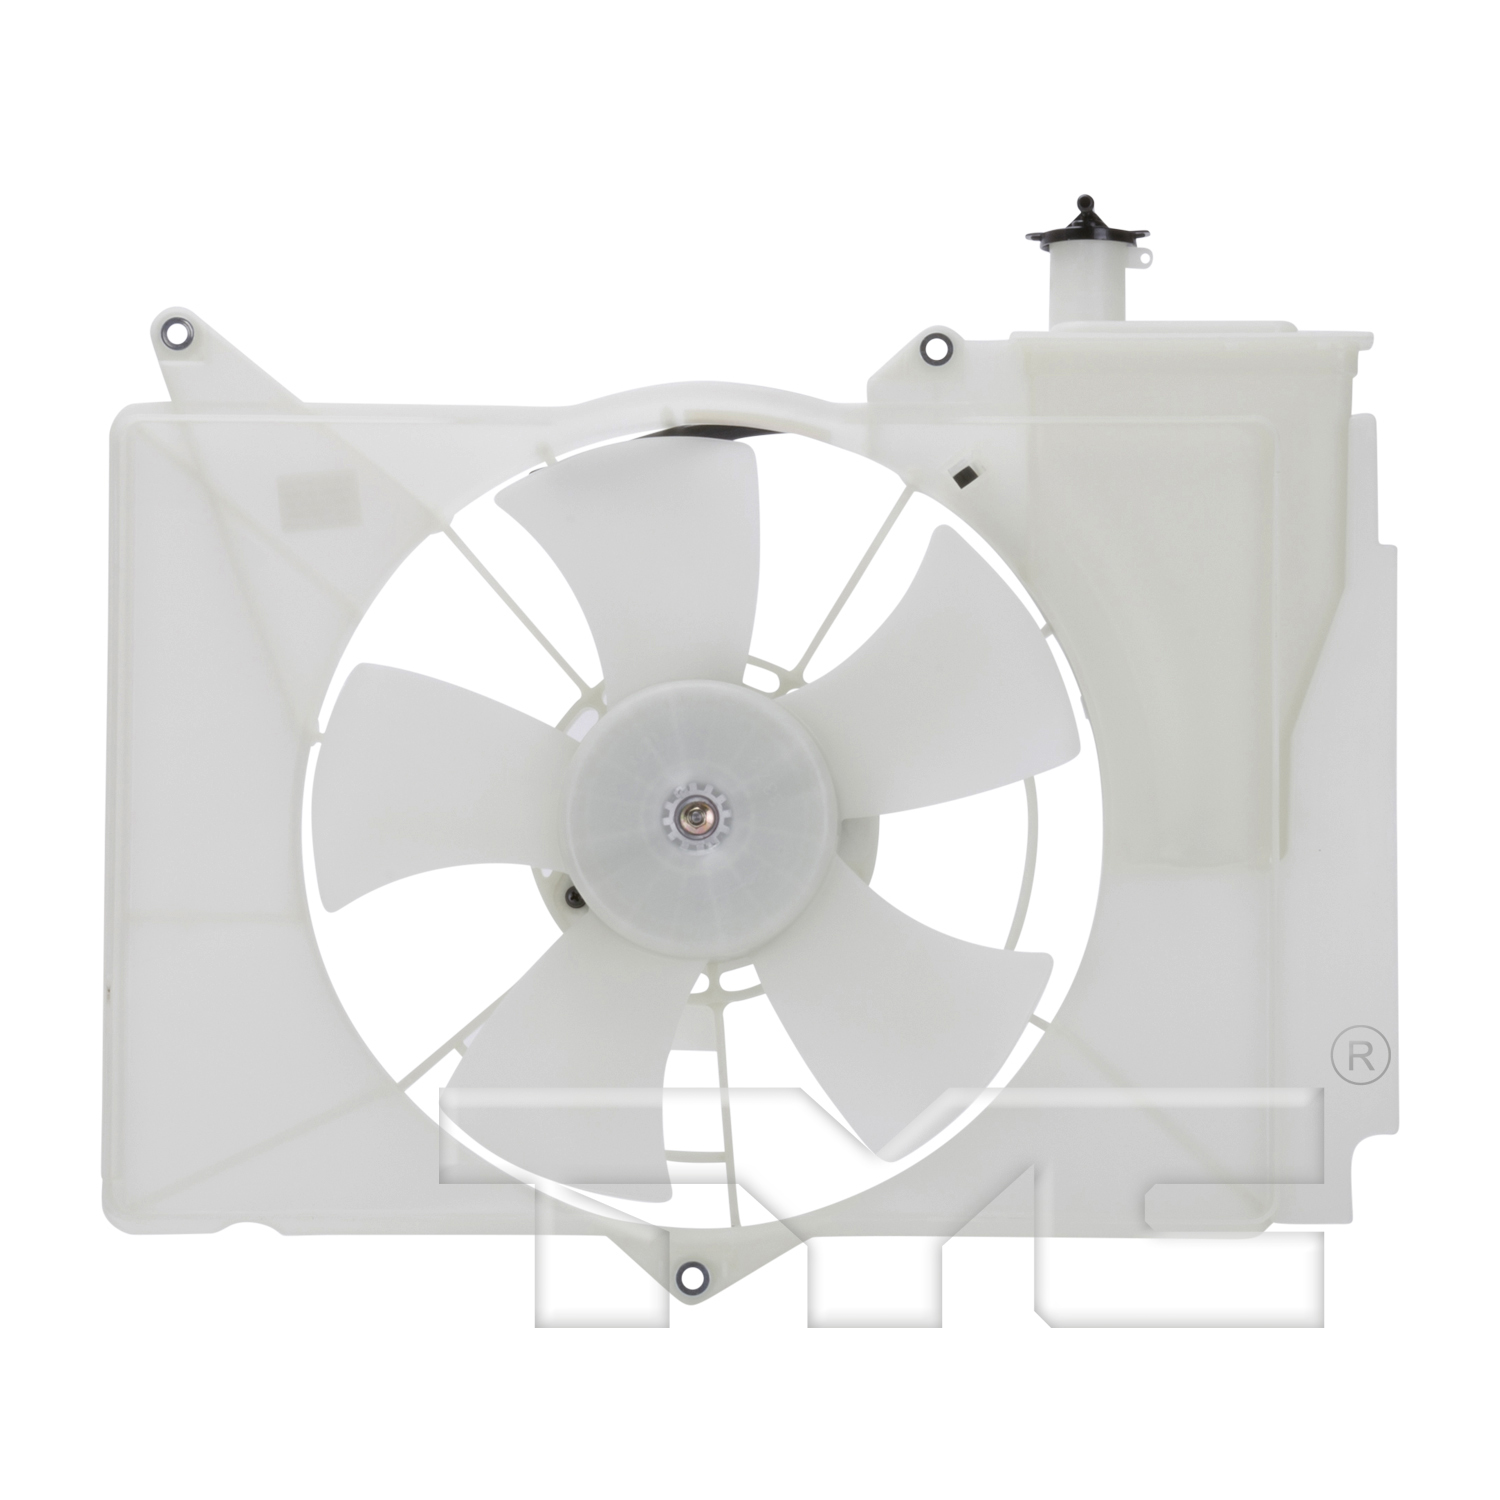 Aftermarket FAN ASSEMBLY/FAN SHROUDS for SCION - XA, xA,04-06,Radiator cooling fan assy